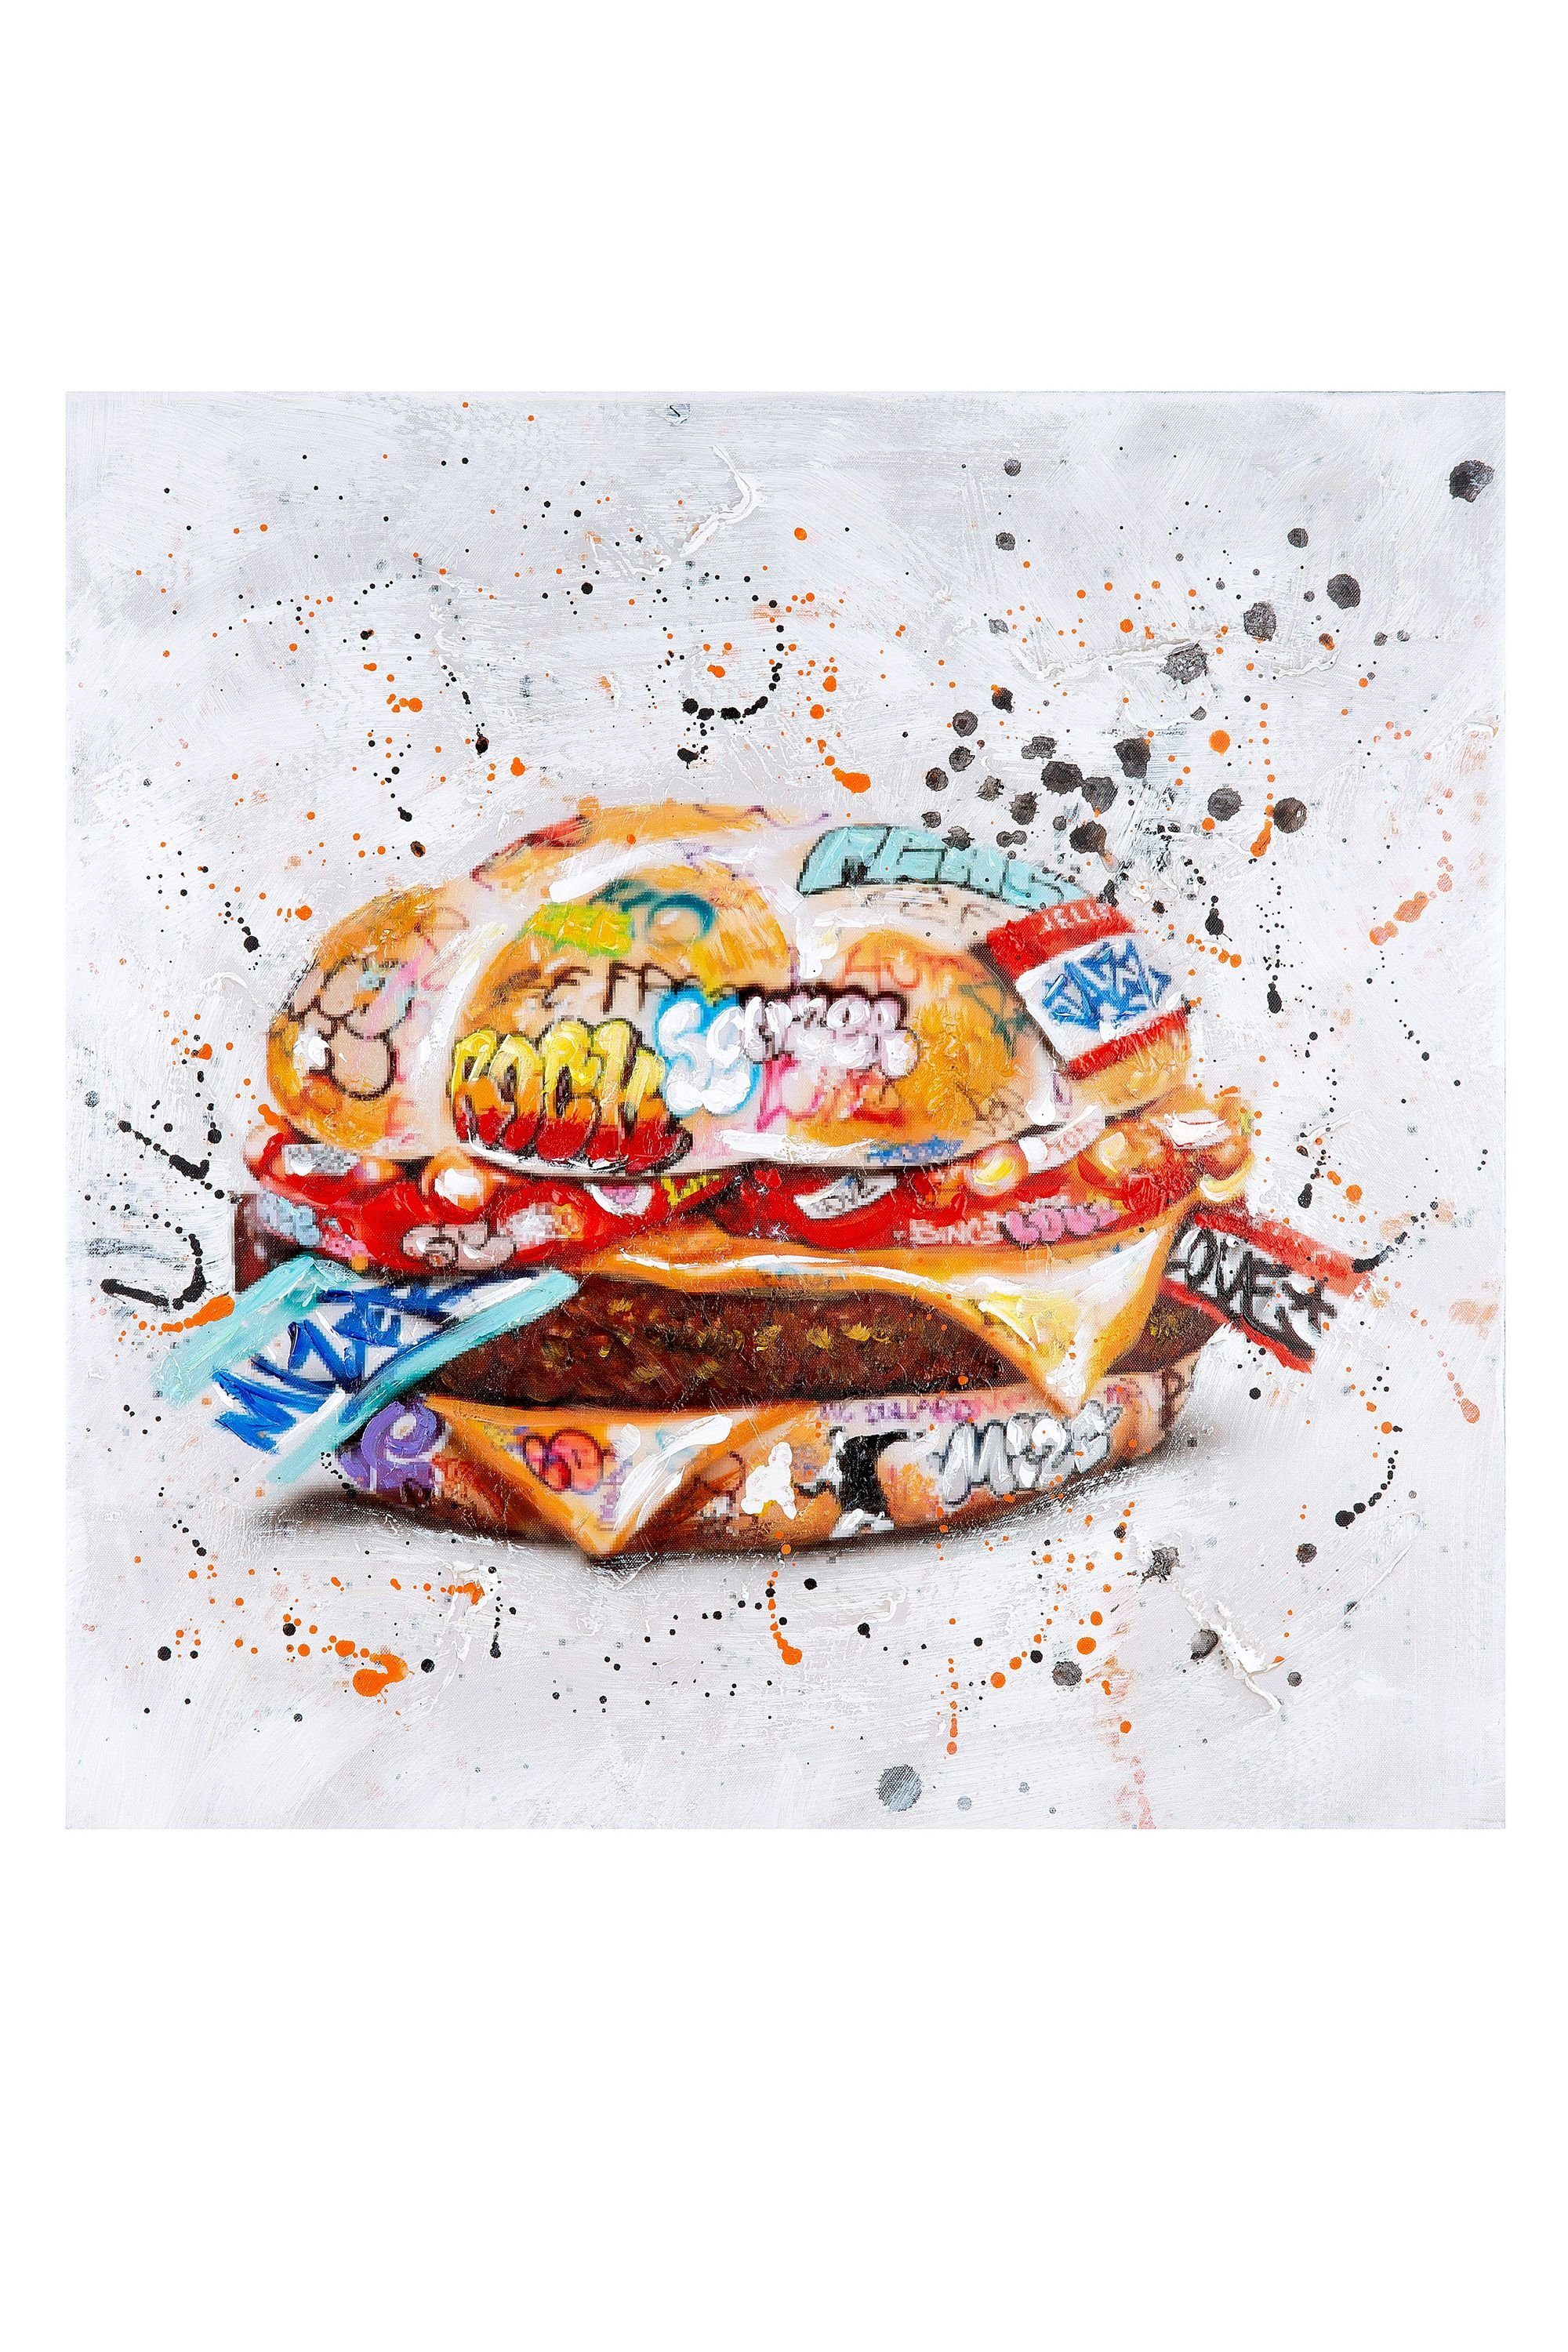 GILDE Bild GILDE Bild Burger - mehrfarbig - H. 60cm x B. 60cm